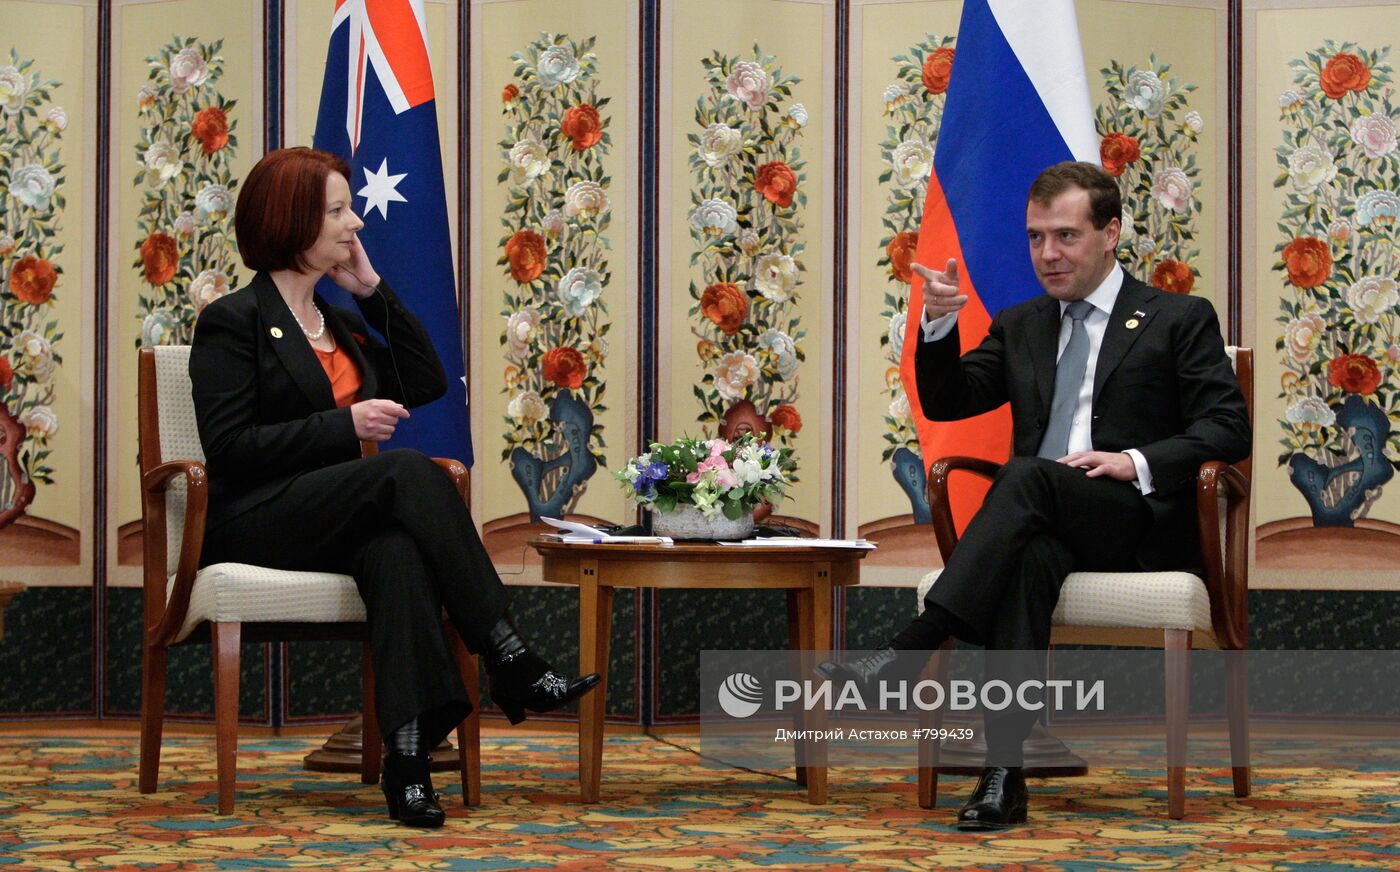 Дмитрий Медведев принимает участие в саммите G20 в Сеуле